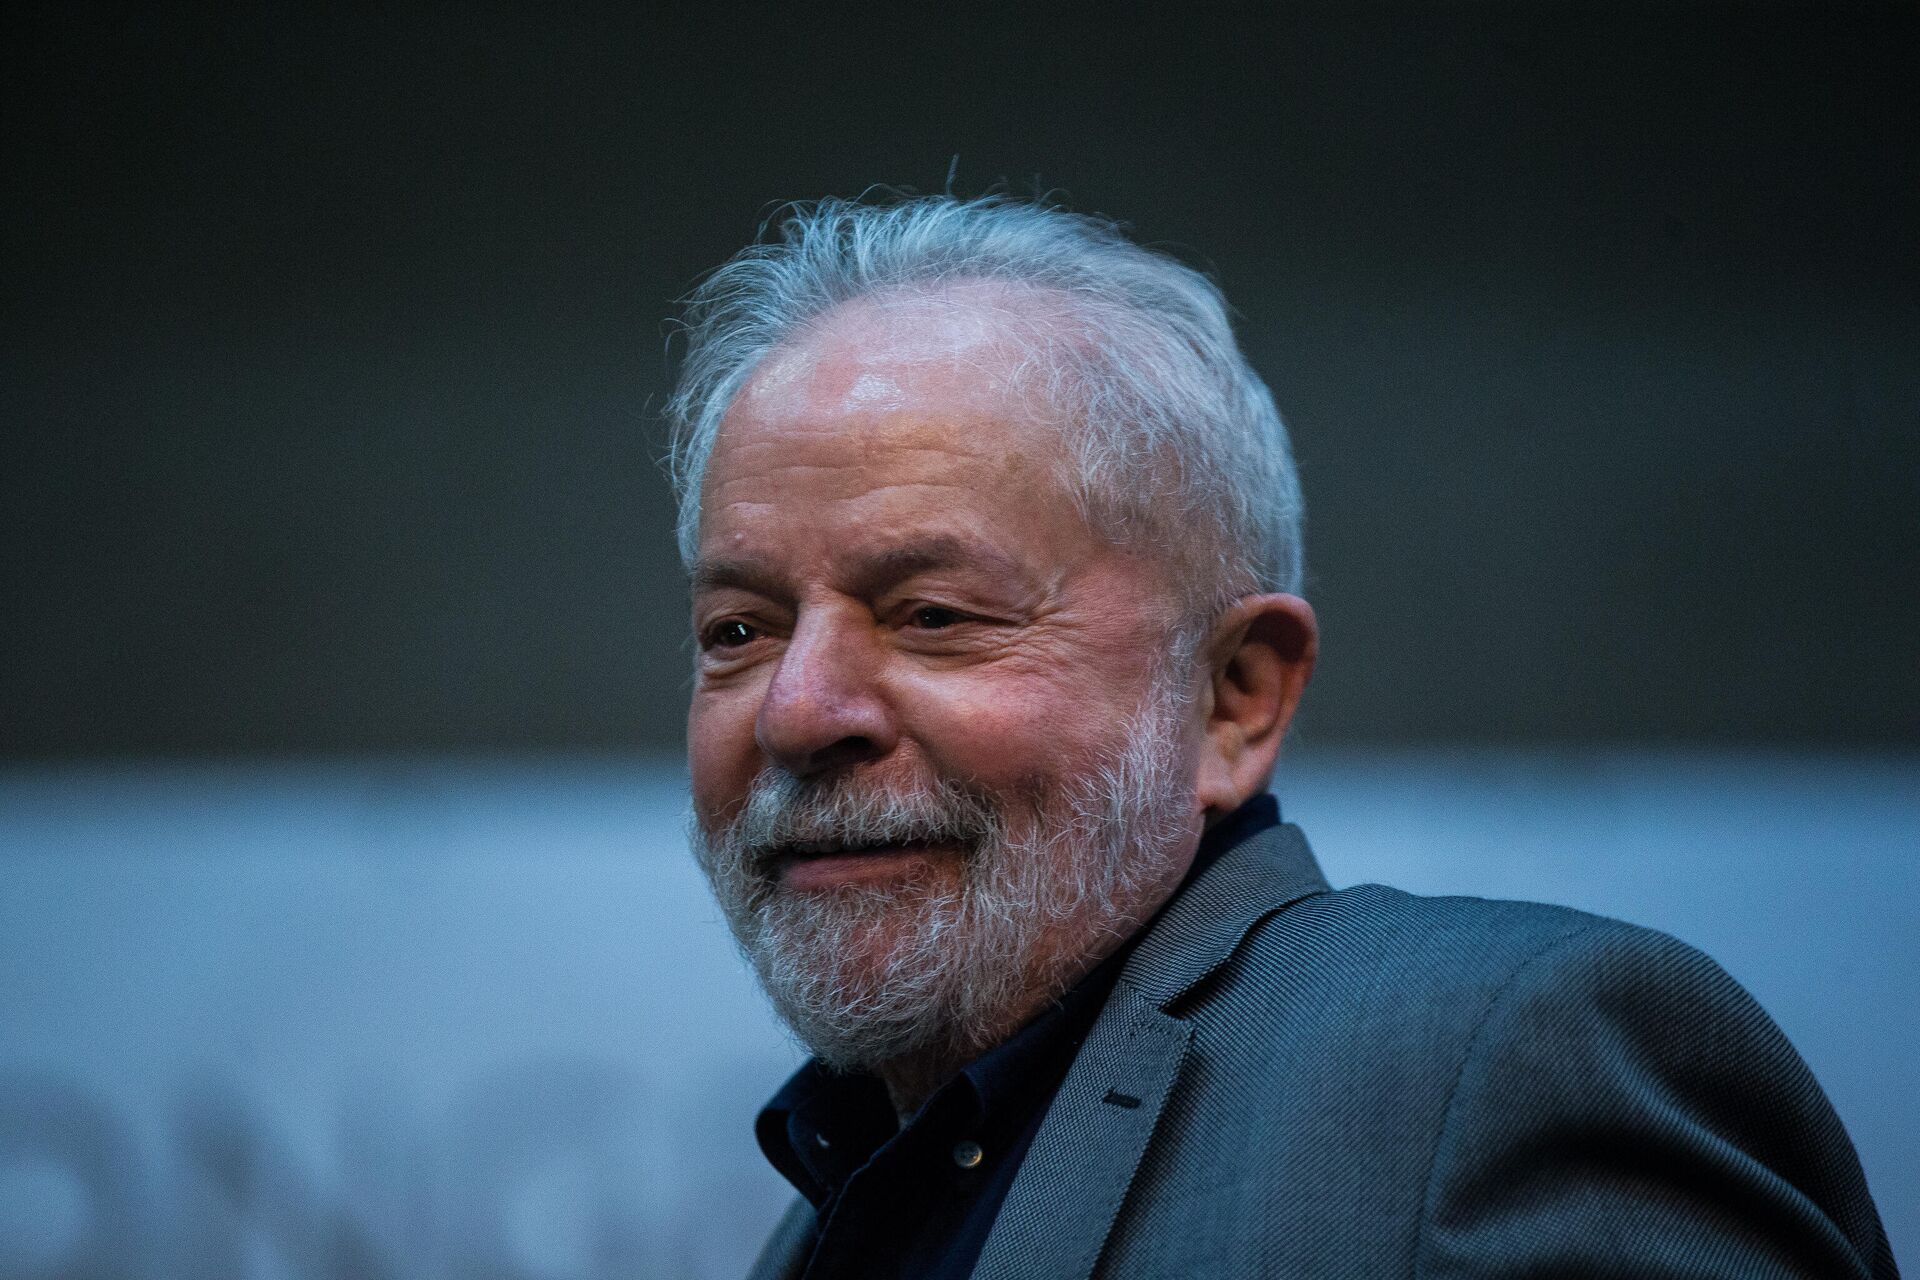 Ação penal contra ex-presidente Lula é suspensa - Sputnik Brasil, 1920, 03.03.2022